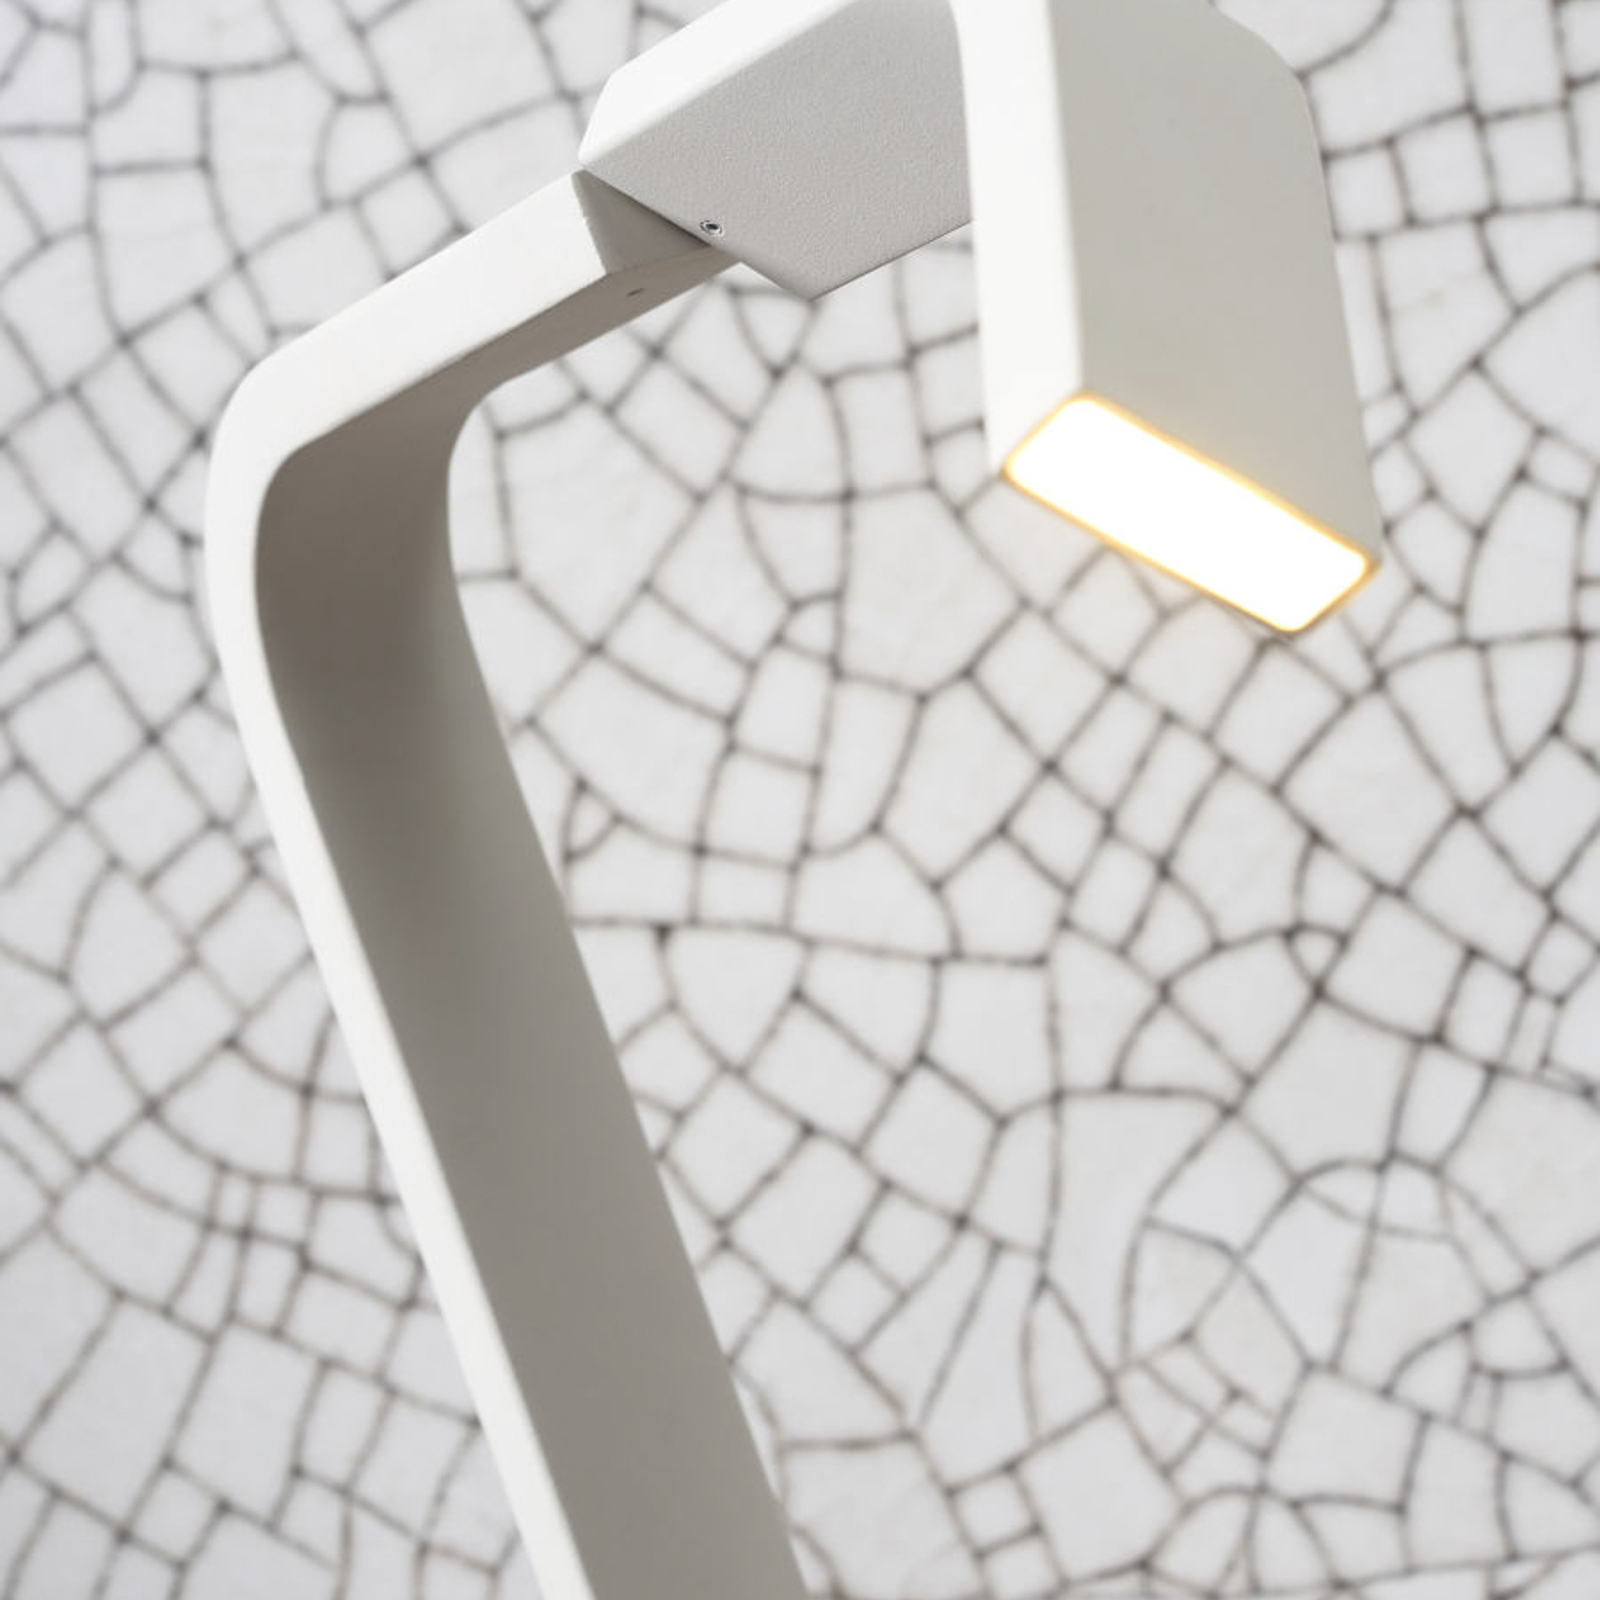 A RoMi Zurich LED-es asztali lámpáról van szó, fehér színben